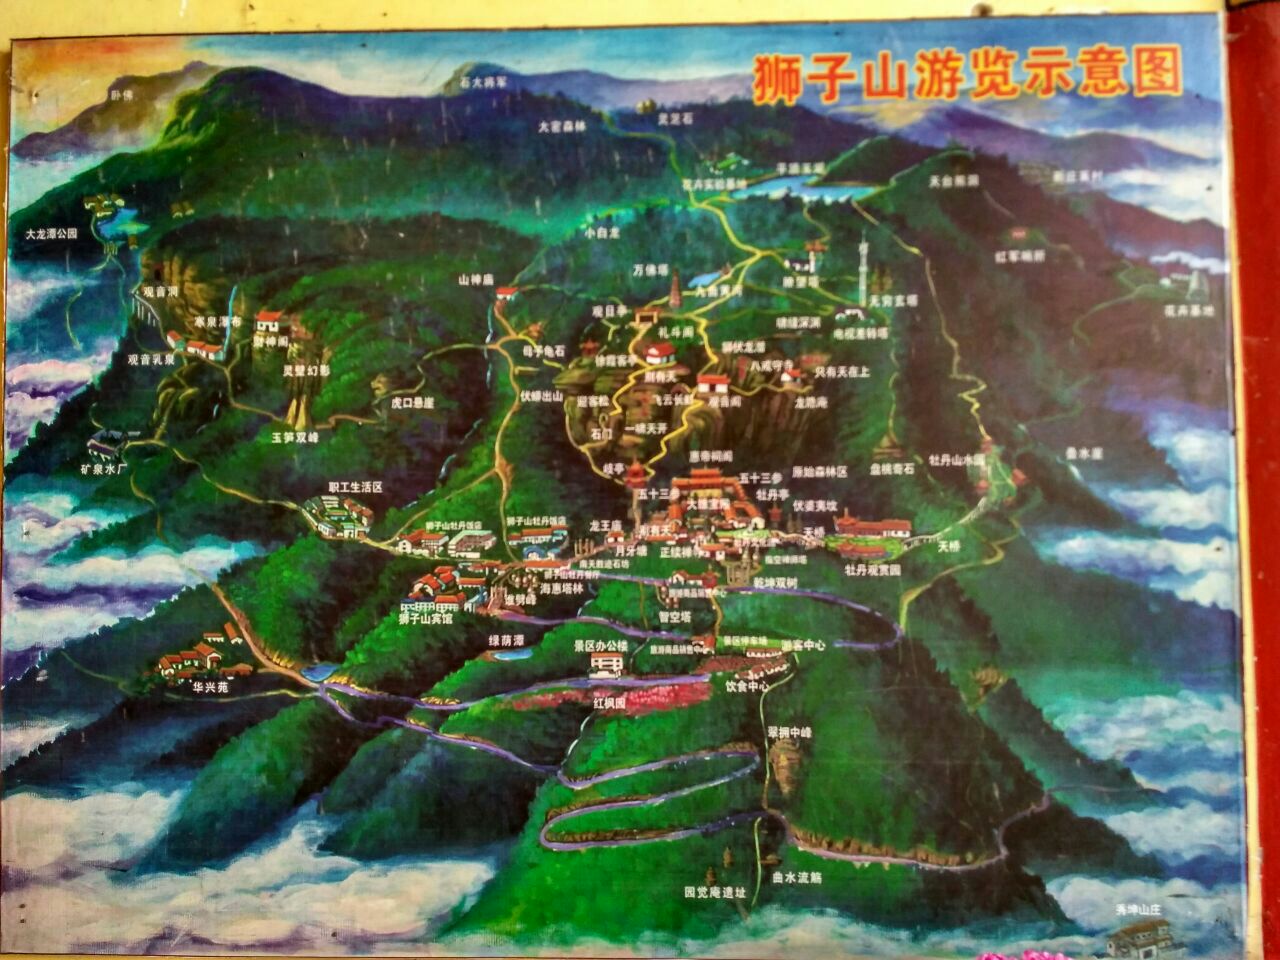 狮子山景区位于武定县城西3km(公路10公里),主峰海拔2452m,以形似